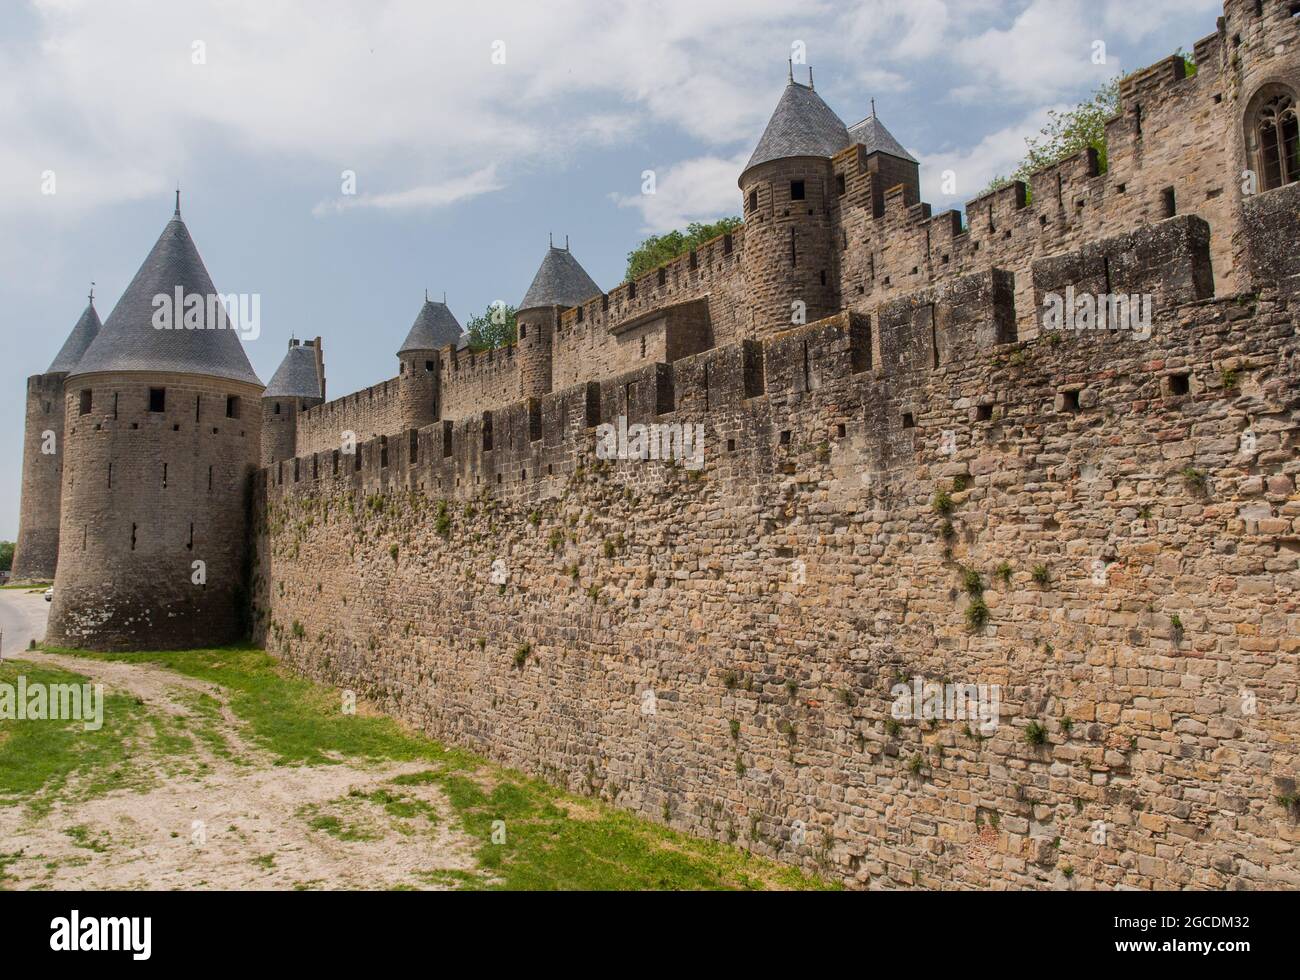 Les doubles remparts de la ville, à l'est de la cité médiévale fortifiée de Carcassonne, classée au patrimoine mondial de l'UNESCO Banque D'Images